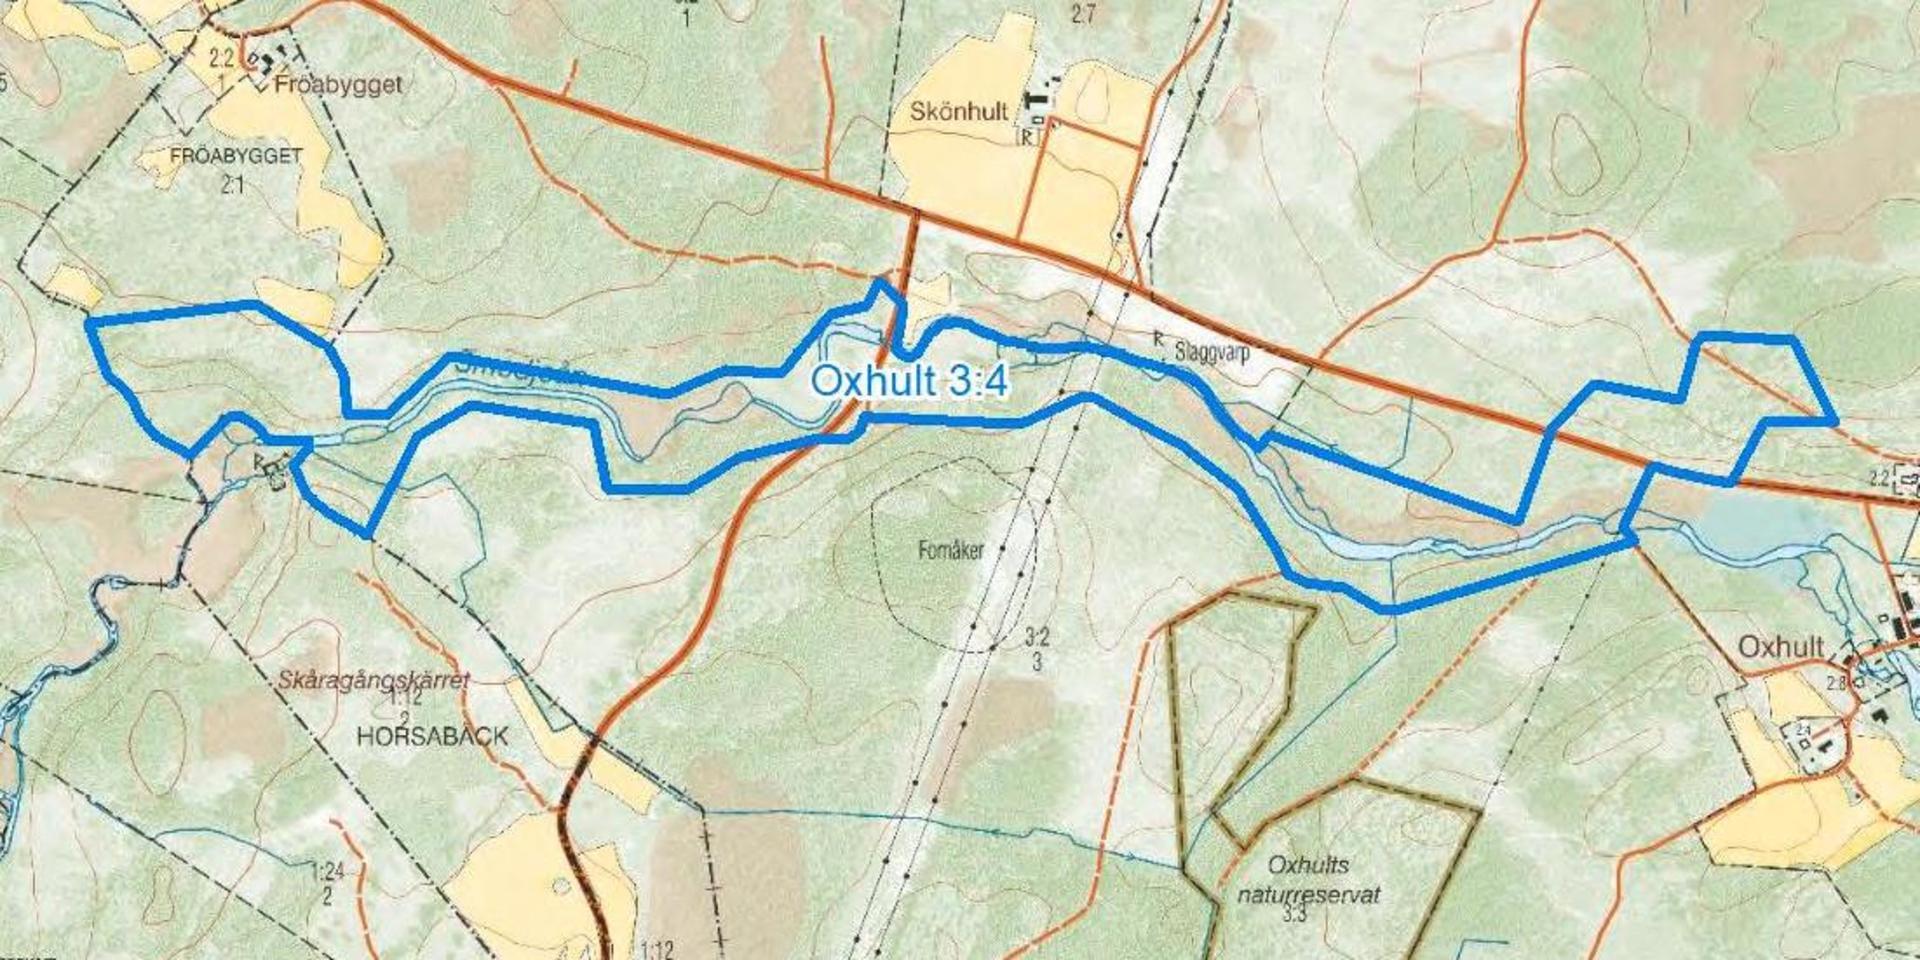 Länsstyrelsen vill göra området som omringas av blå heldragen linje på ovanstående karta till naturreservat. Området är 33 hektar stort och börjar cirka fyra kilometer väster om Hishult. Det nya reservatet följer Smedjeån nedströms ett par kilometer.